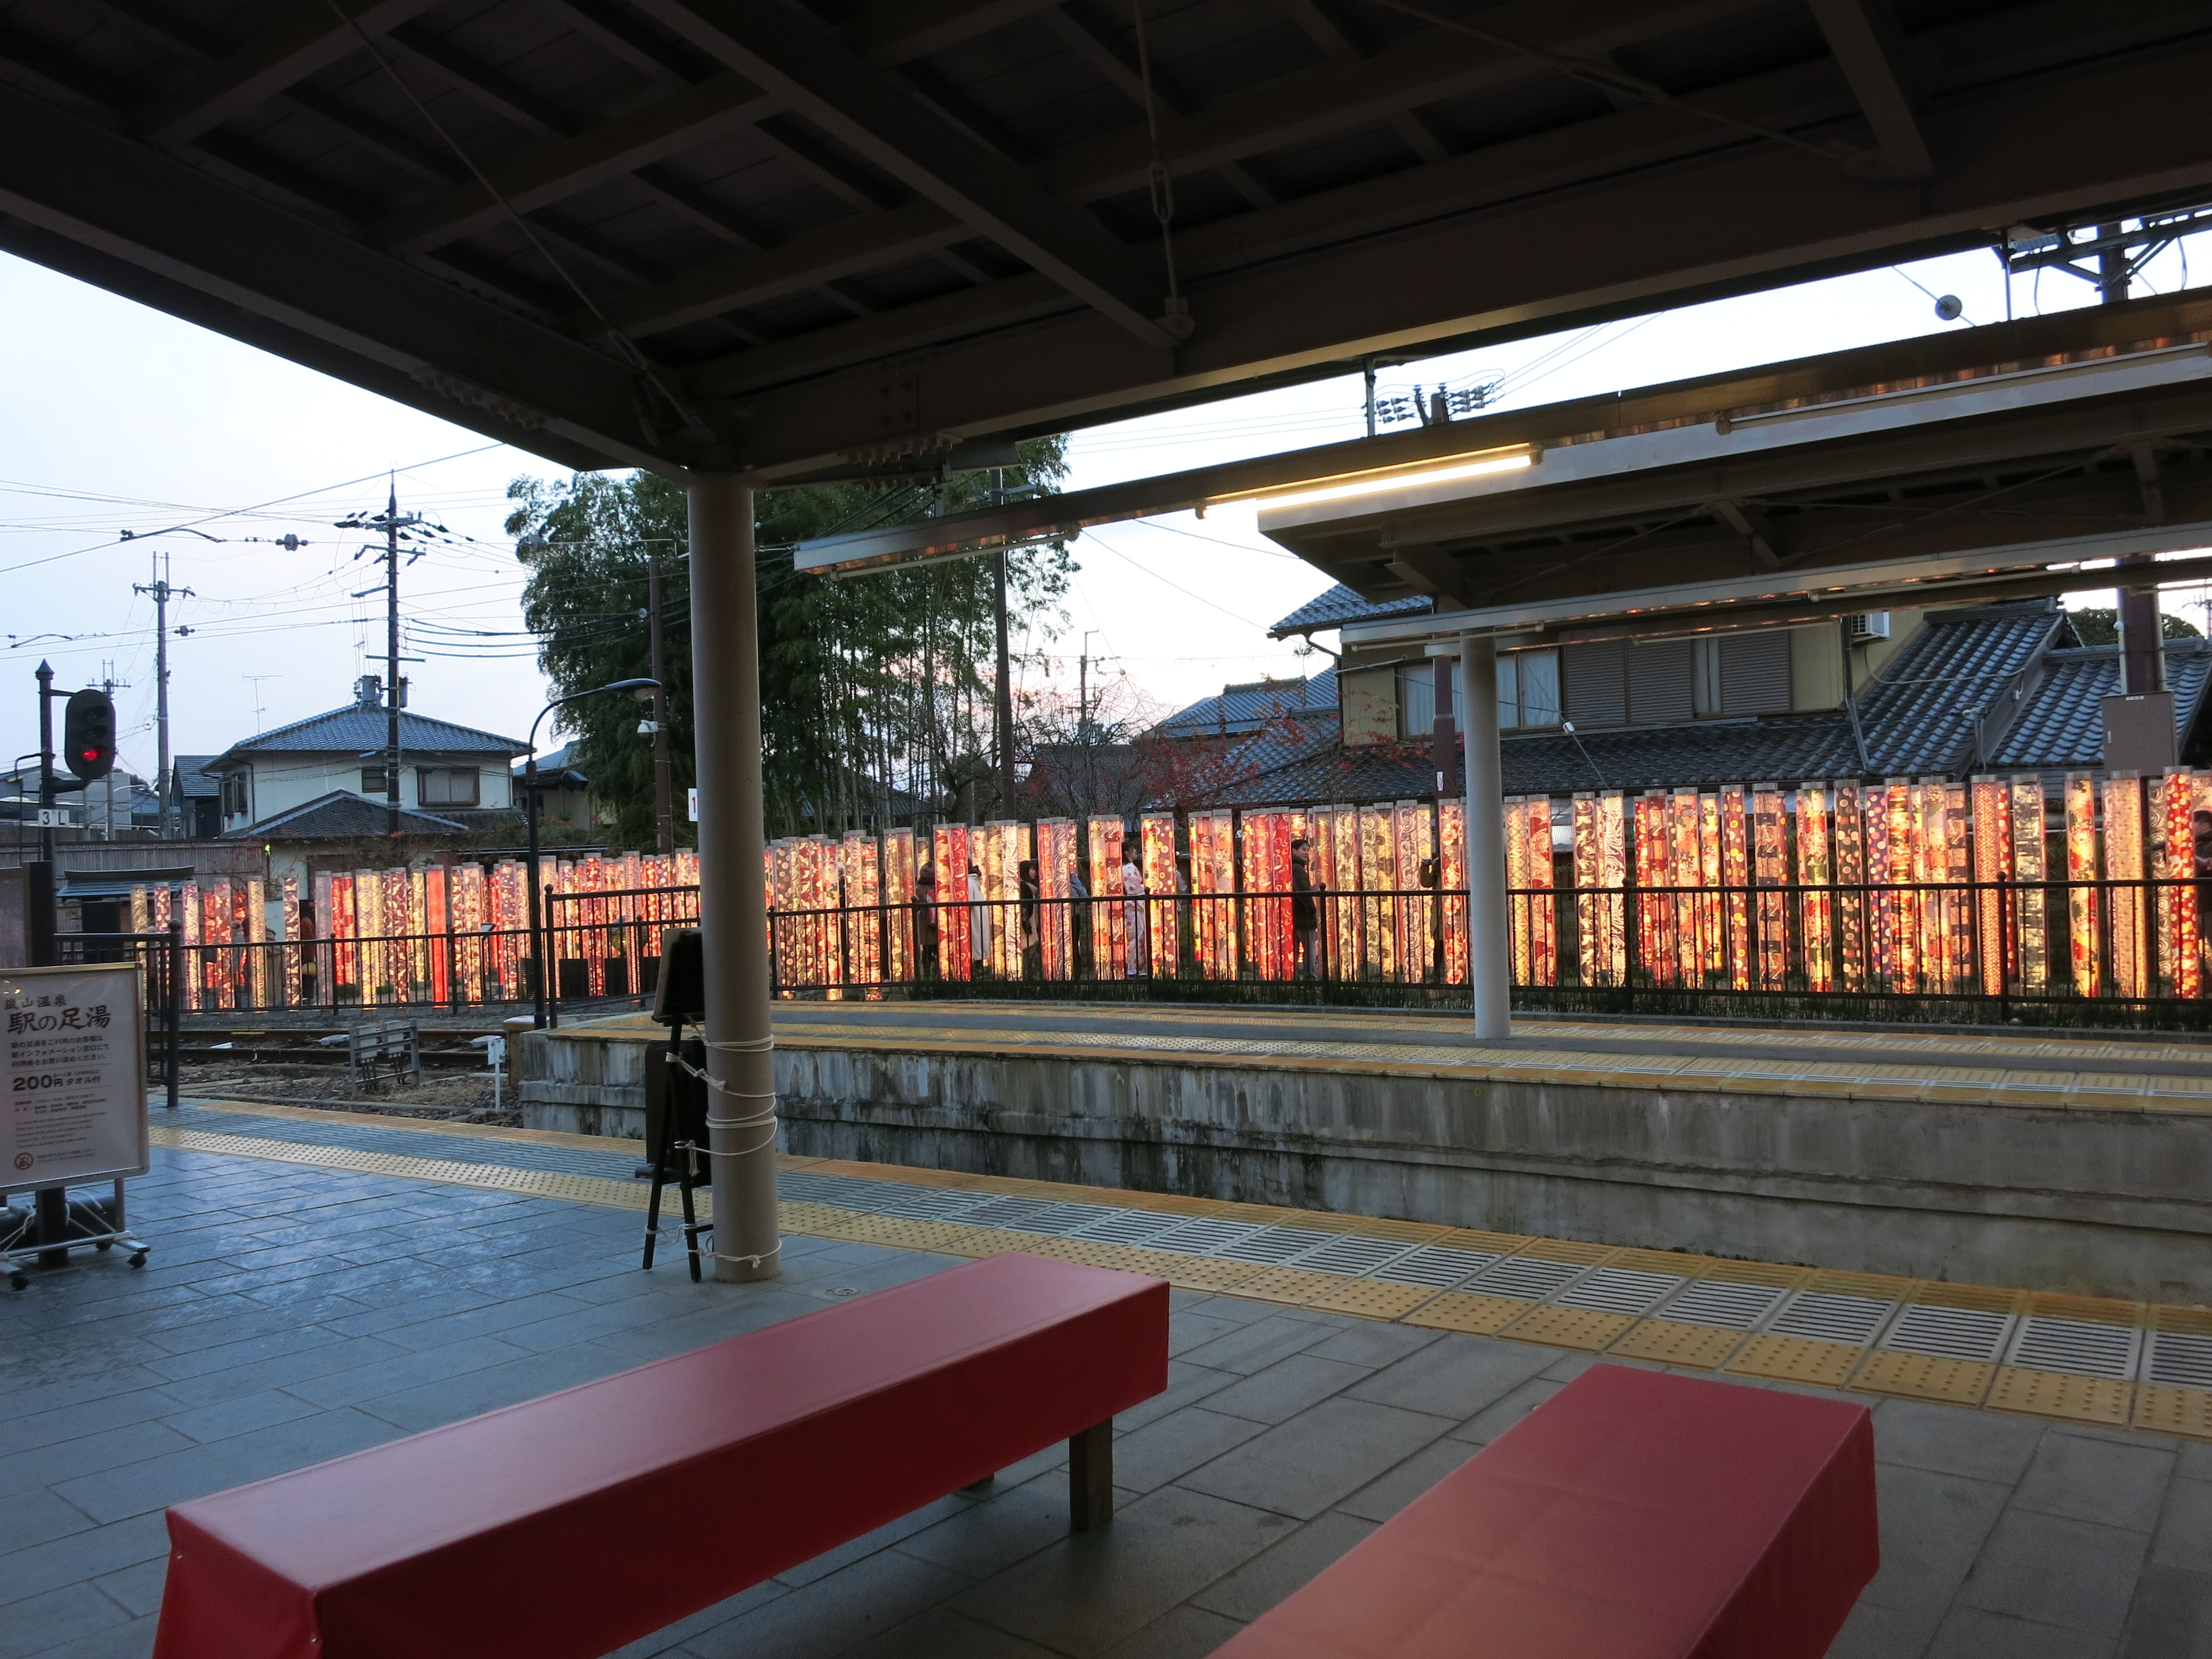 帰りはまた路面電車に乗車し、嵐電嵐山駅まで戻ってきました。駅のライトアップが素敵でした。